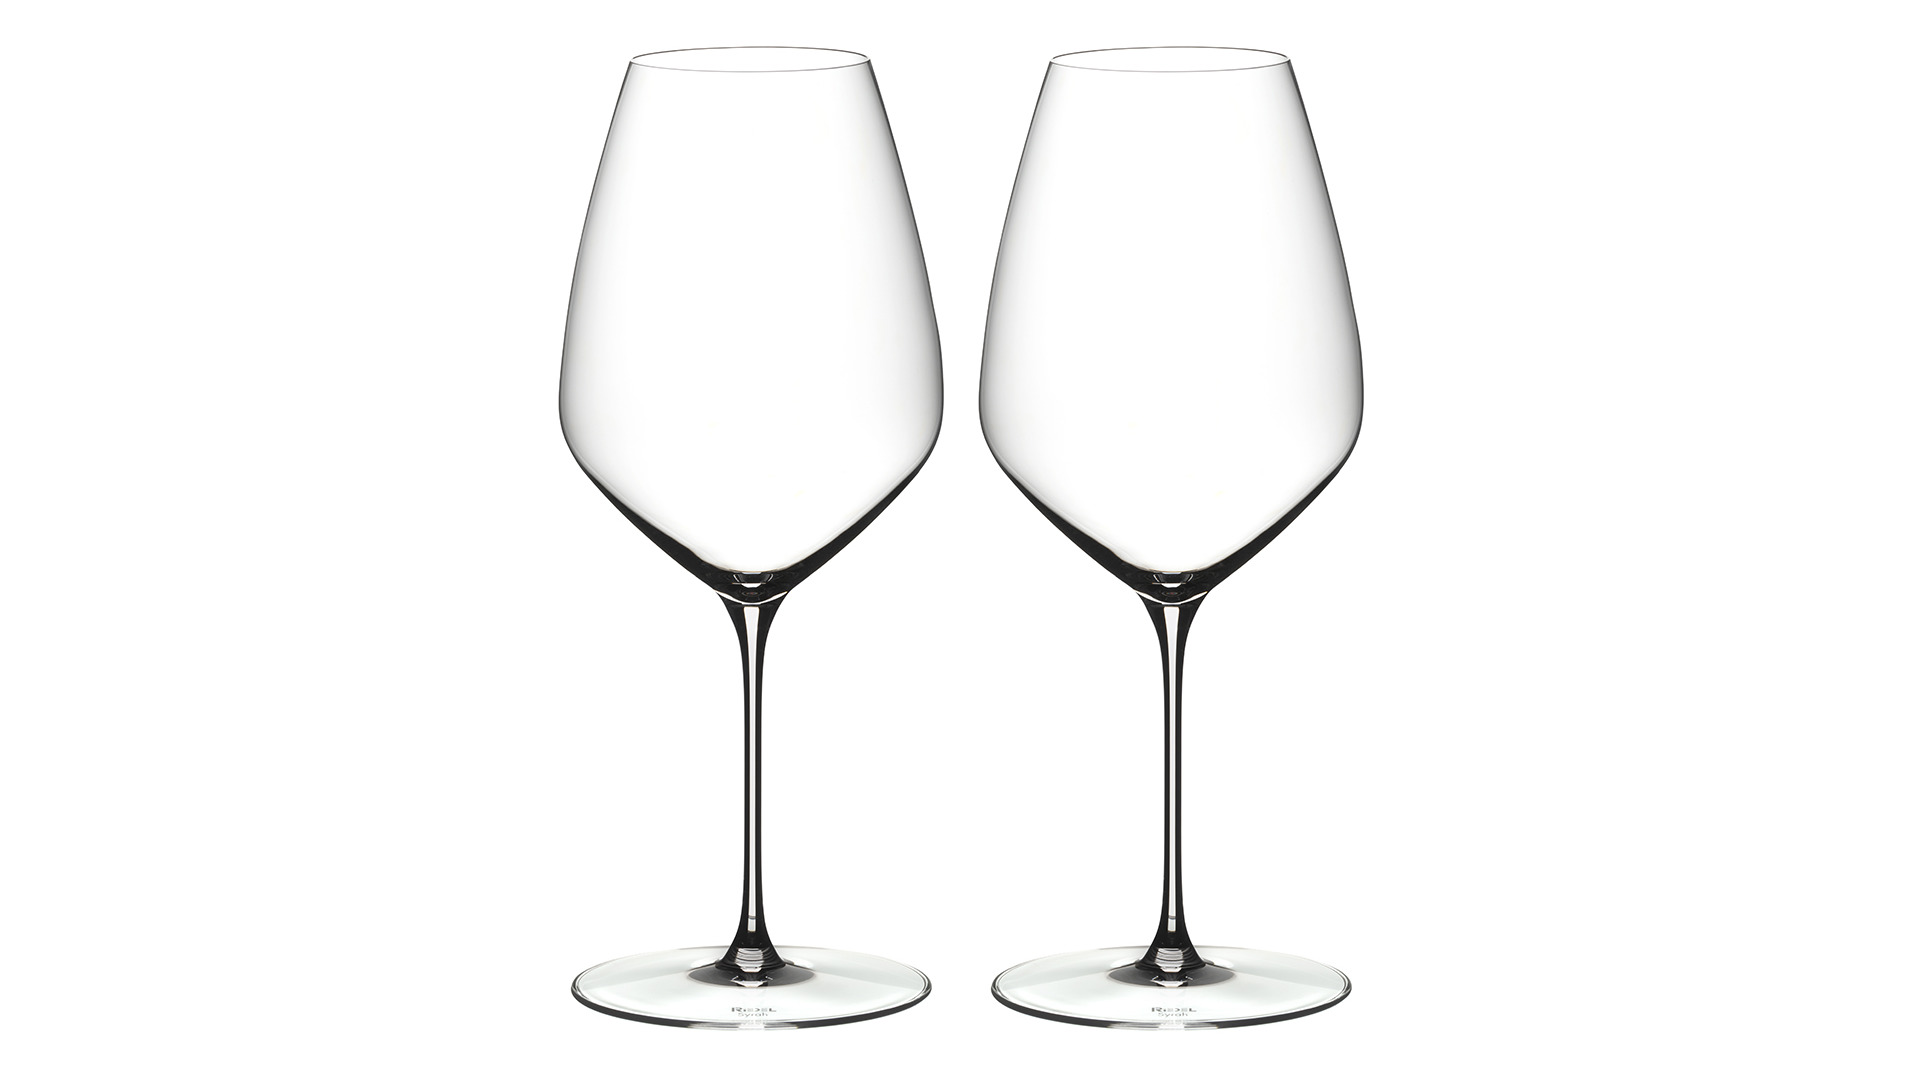 Набор бокалов для красного вина Riedel Veloce Syrah 720 мл, 2шт, стекло хрустальное, п/к